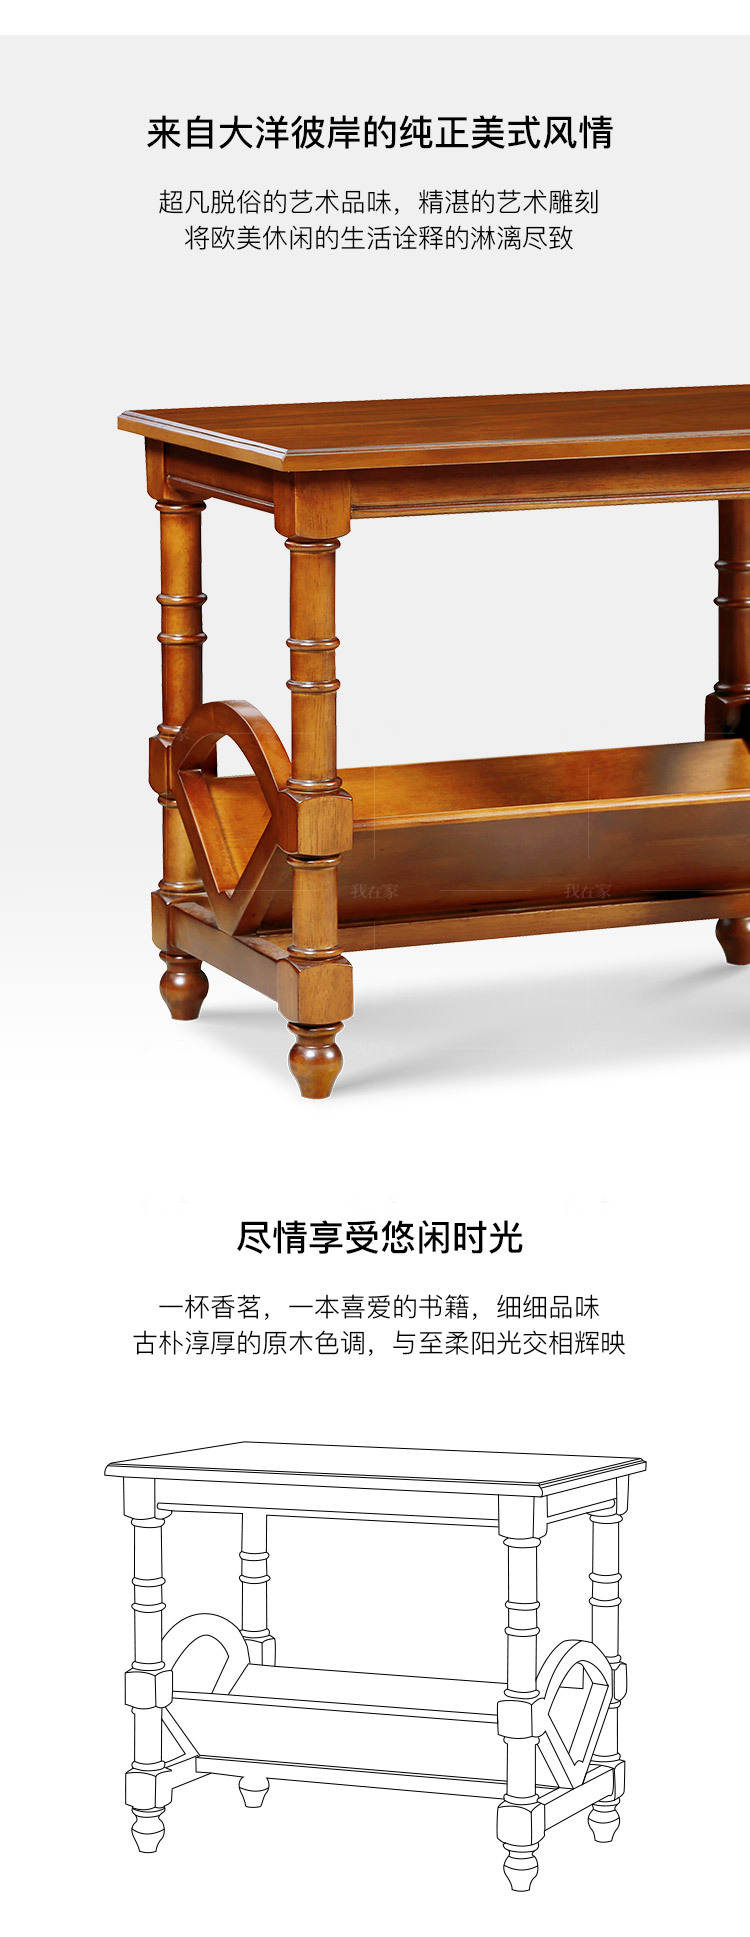 传统美式风格唐顿书报架的家具详细介绍